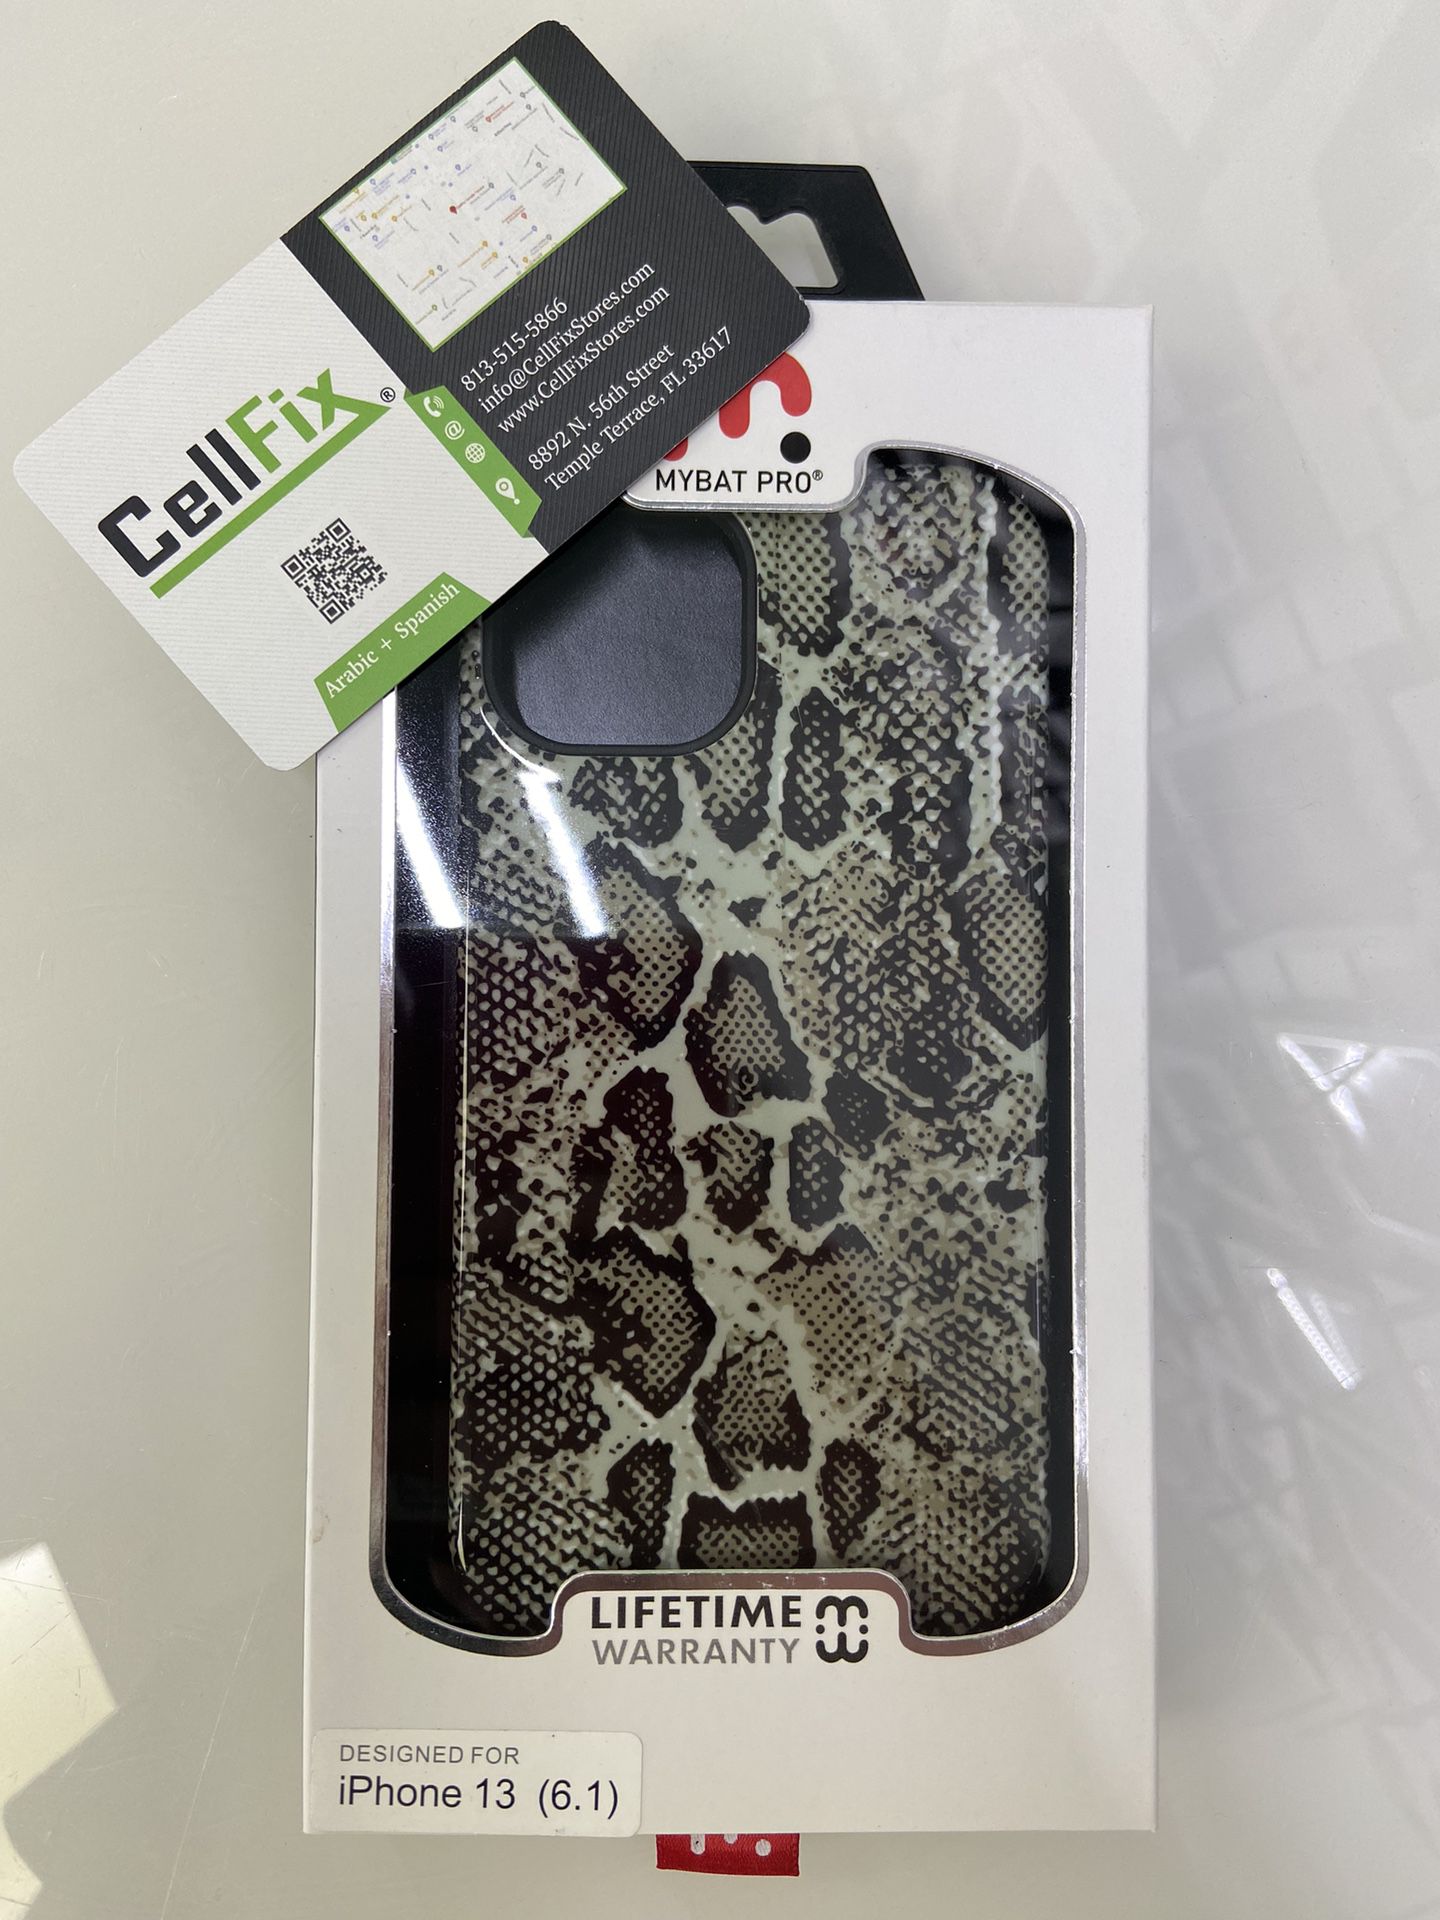 iPhone 13 Cases - $25 